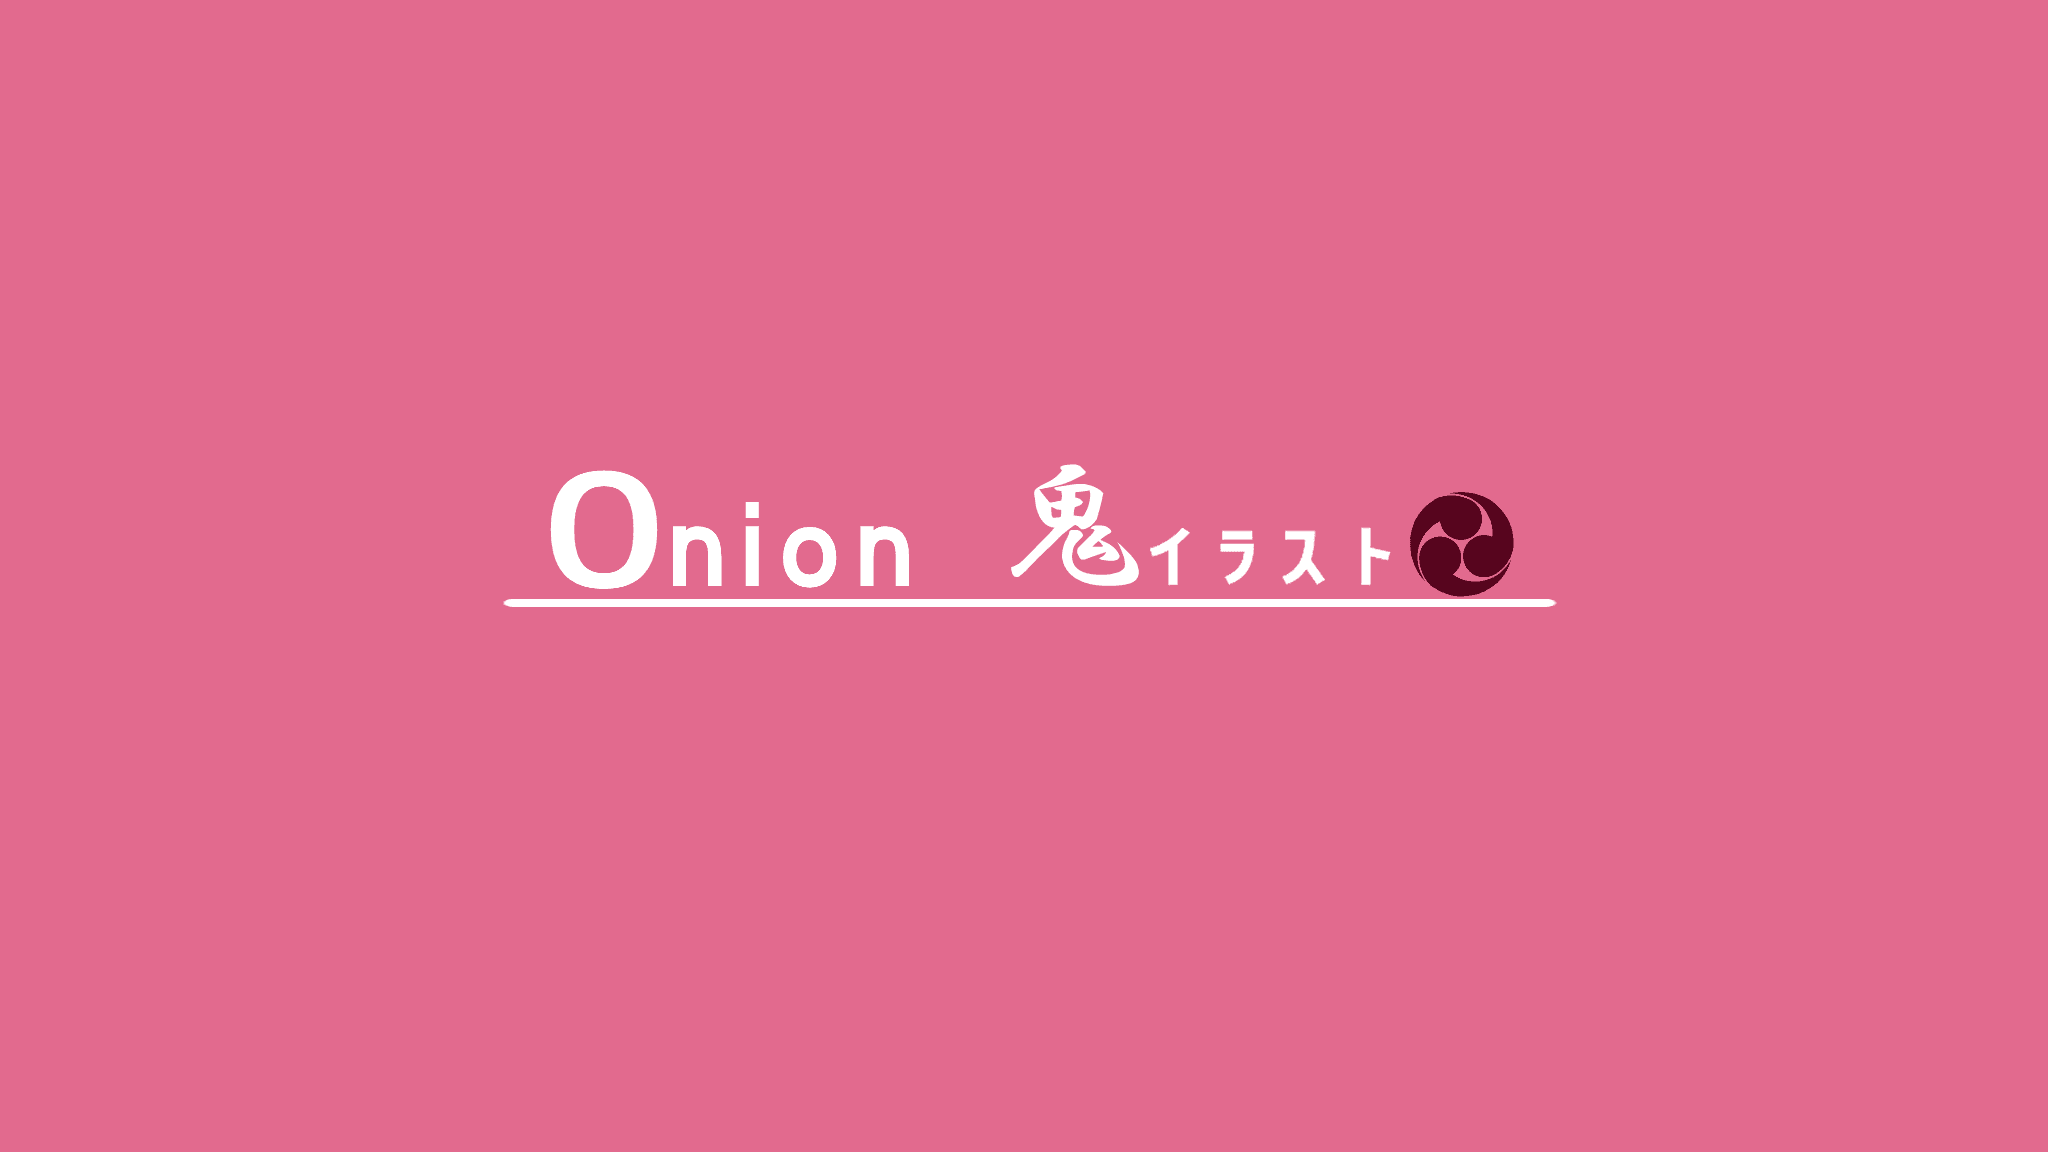 Onion_oni bannière